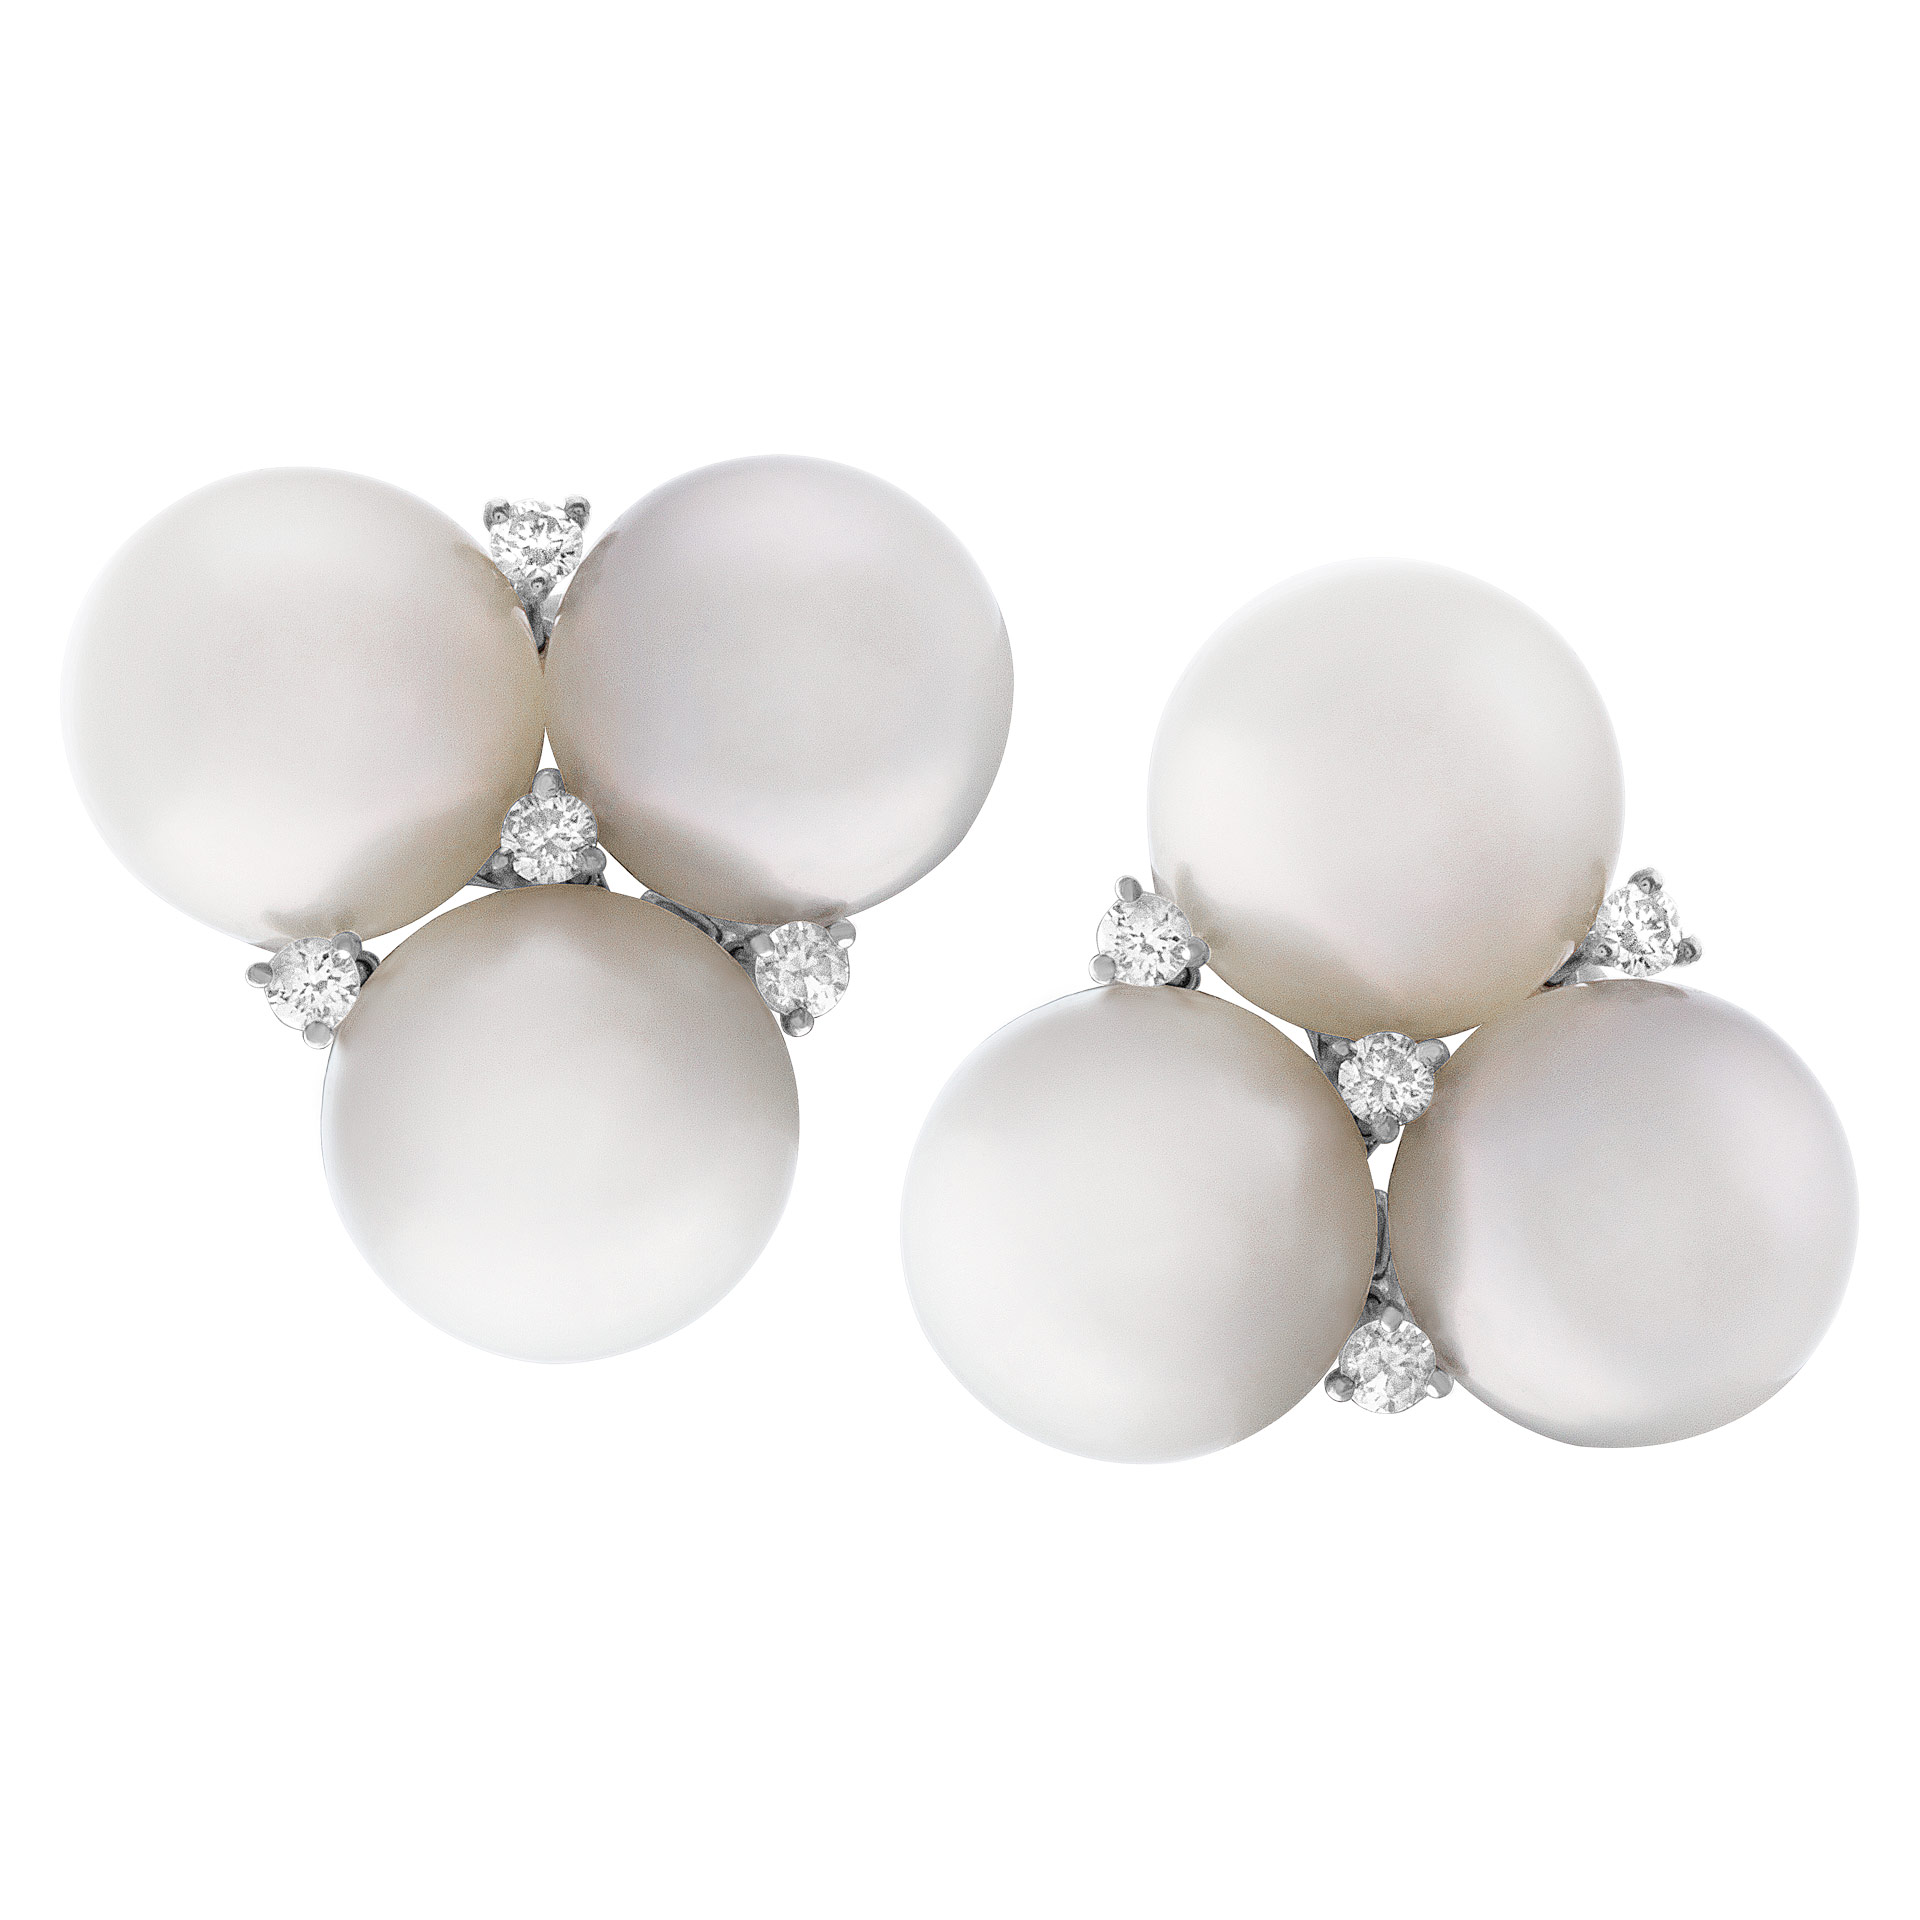 Lustrous Pearl earrings in 18k white gold